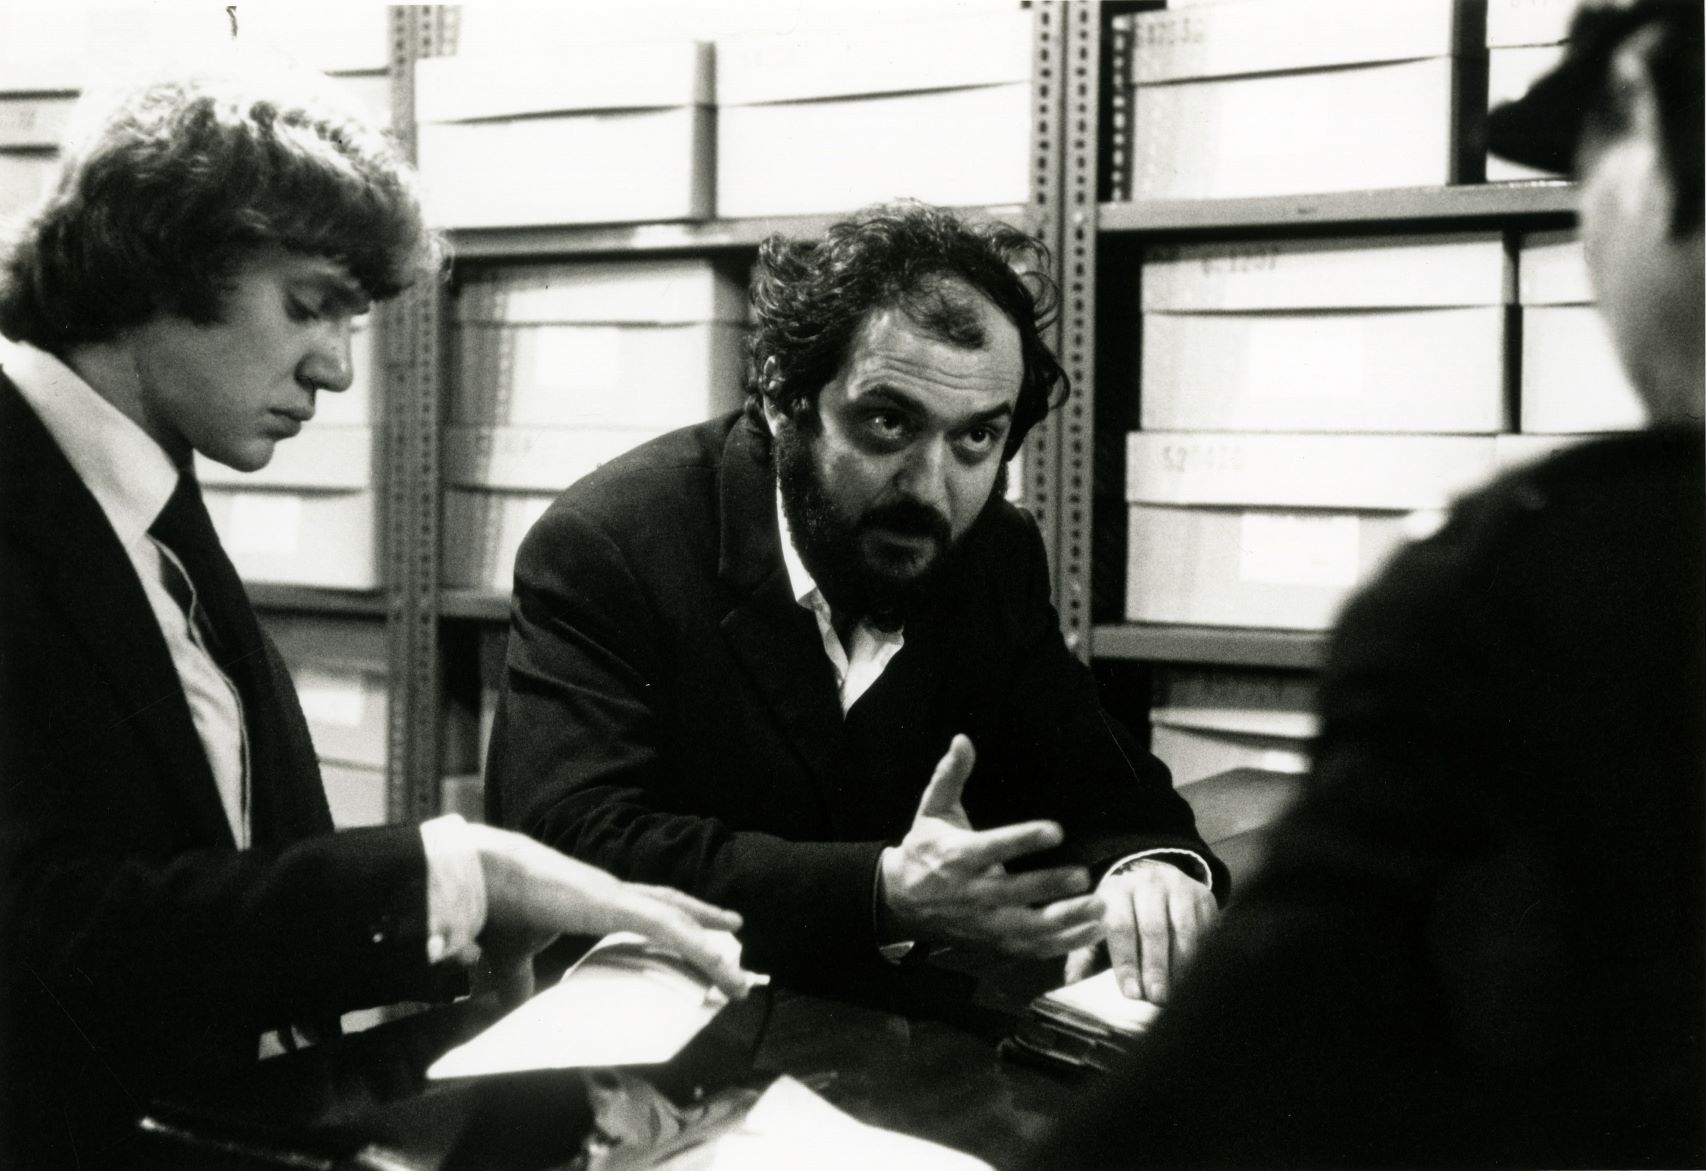 Kubrick por Kubrick (filme)